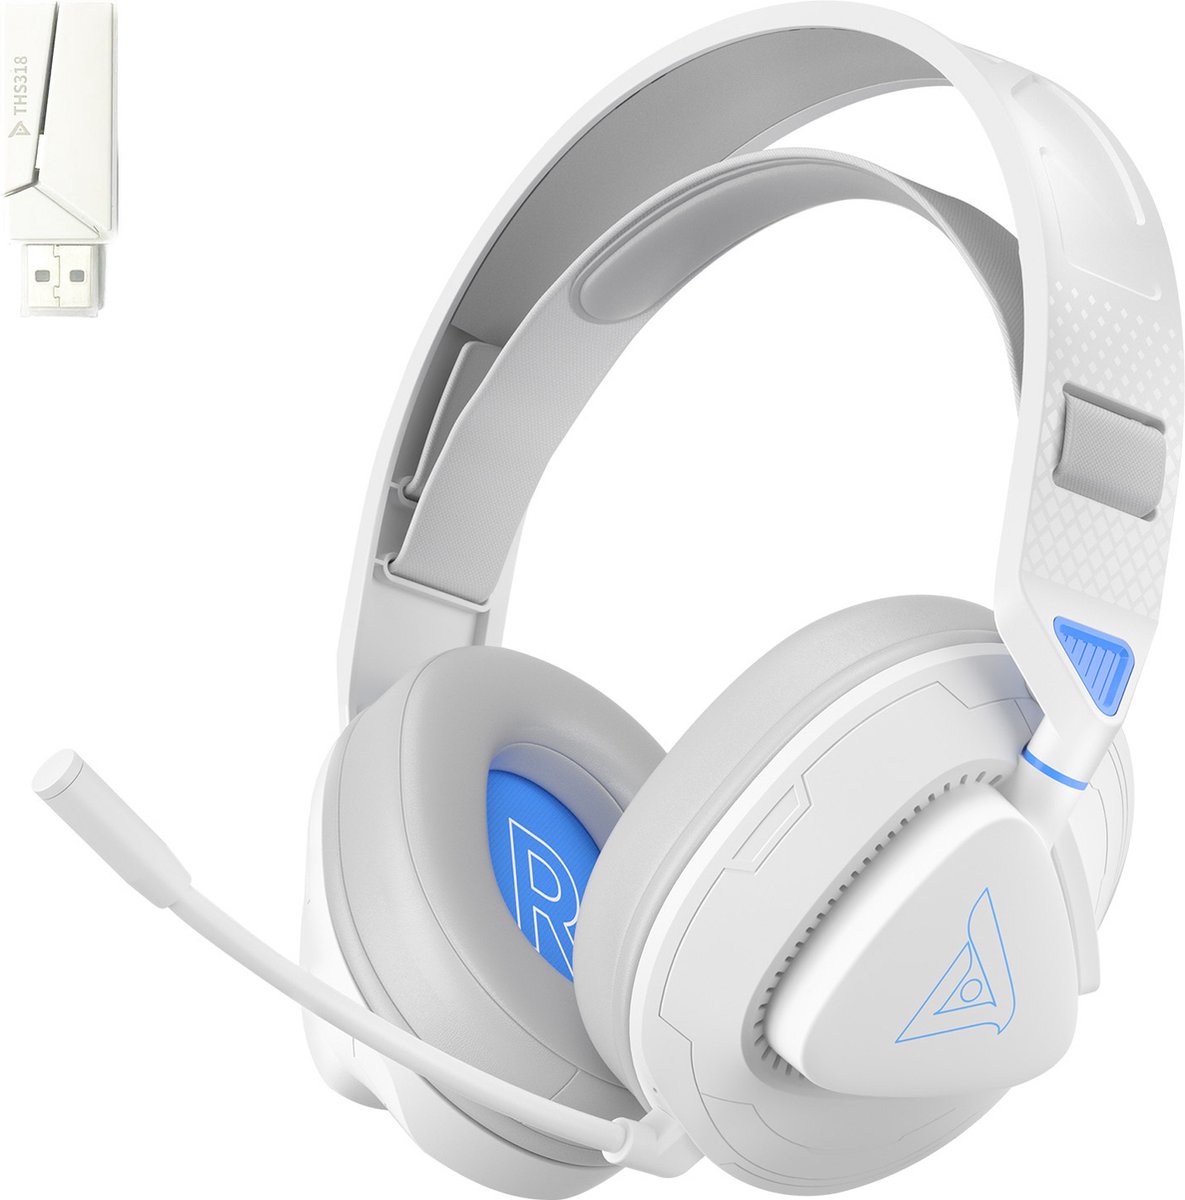 TAIDU THS318 Draadloze Gaming headsets - met USB-zender - Over-ear koptelefoon met microfoon - Multi platform - Wit